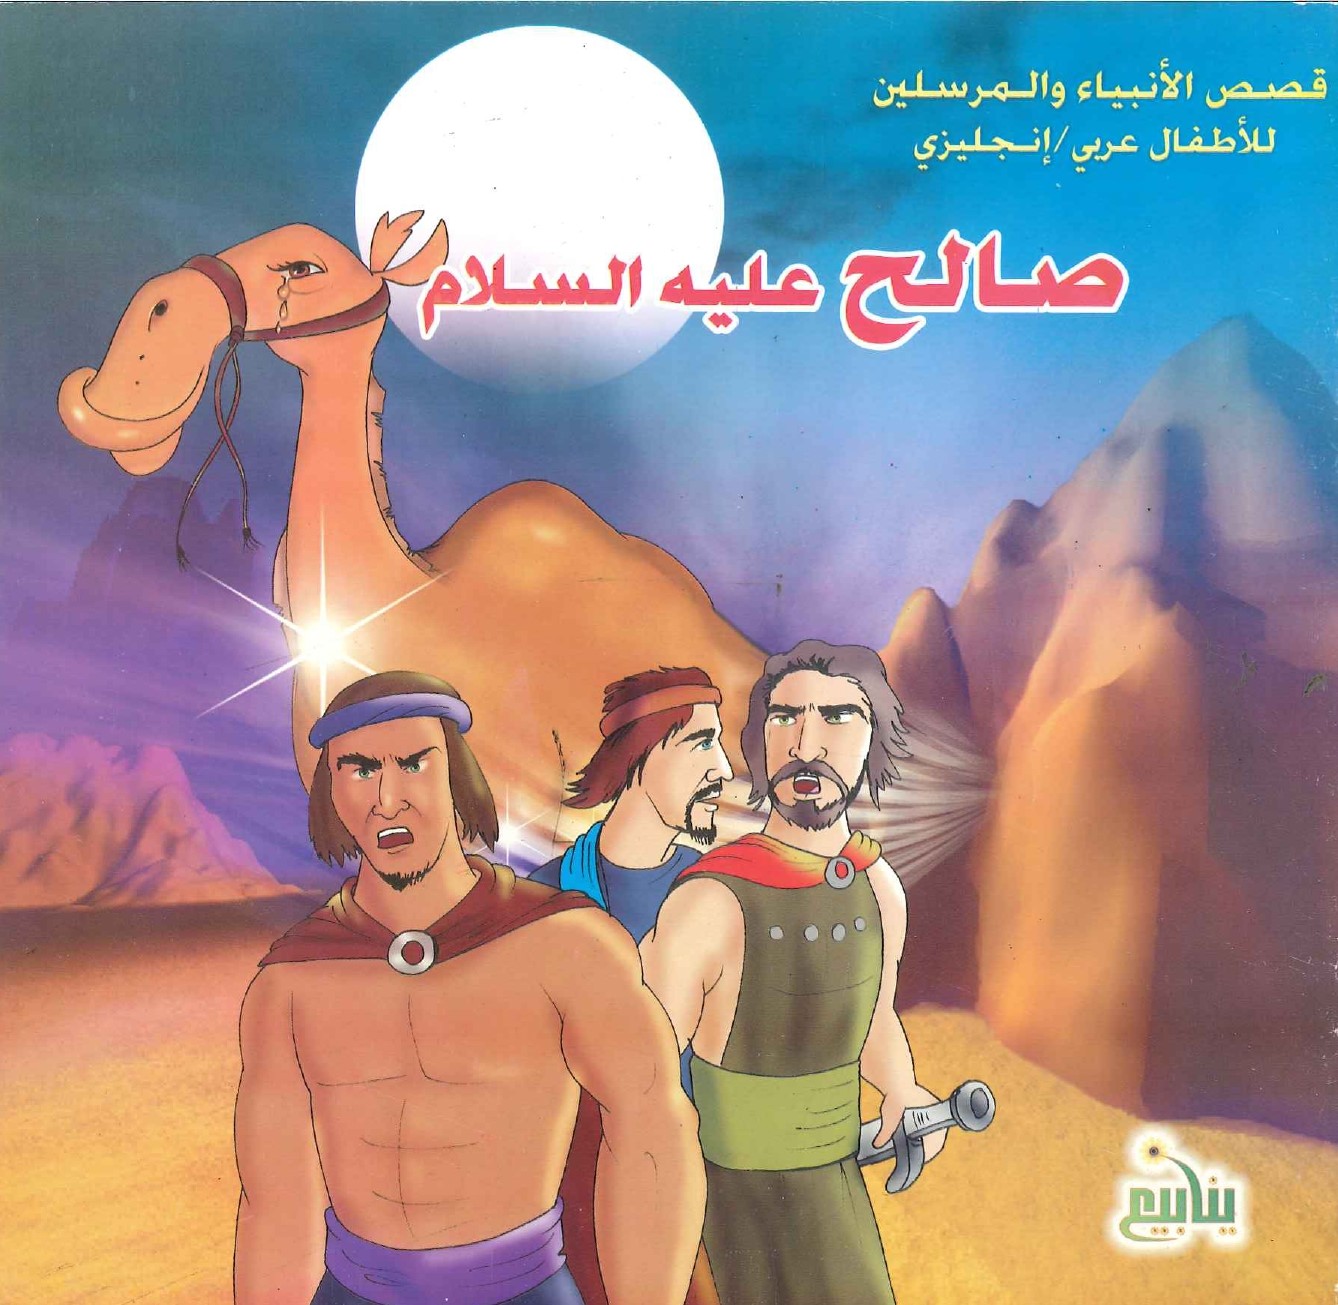 قصص الأنبياء والمرسلين للأطفال عربي/إنجليزي – صالح عليه السالم – Mashreq  Books